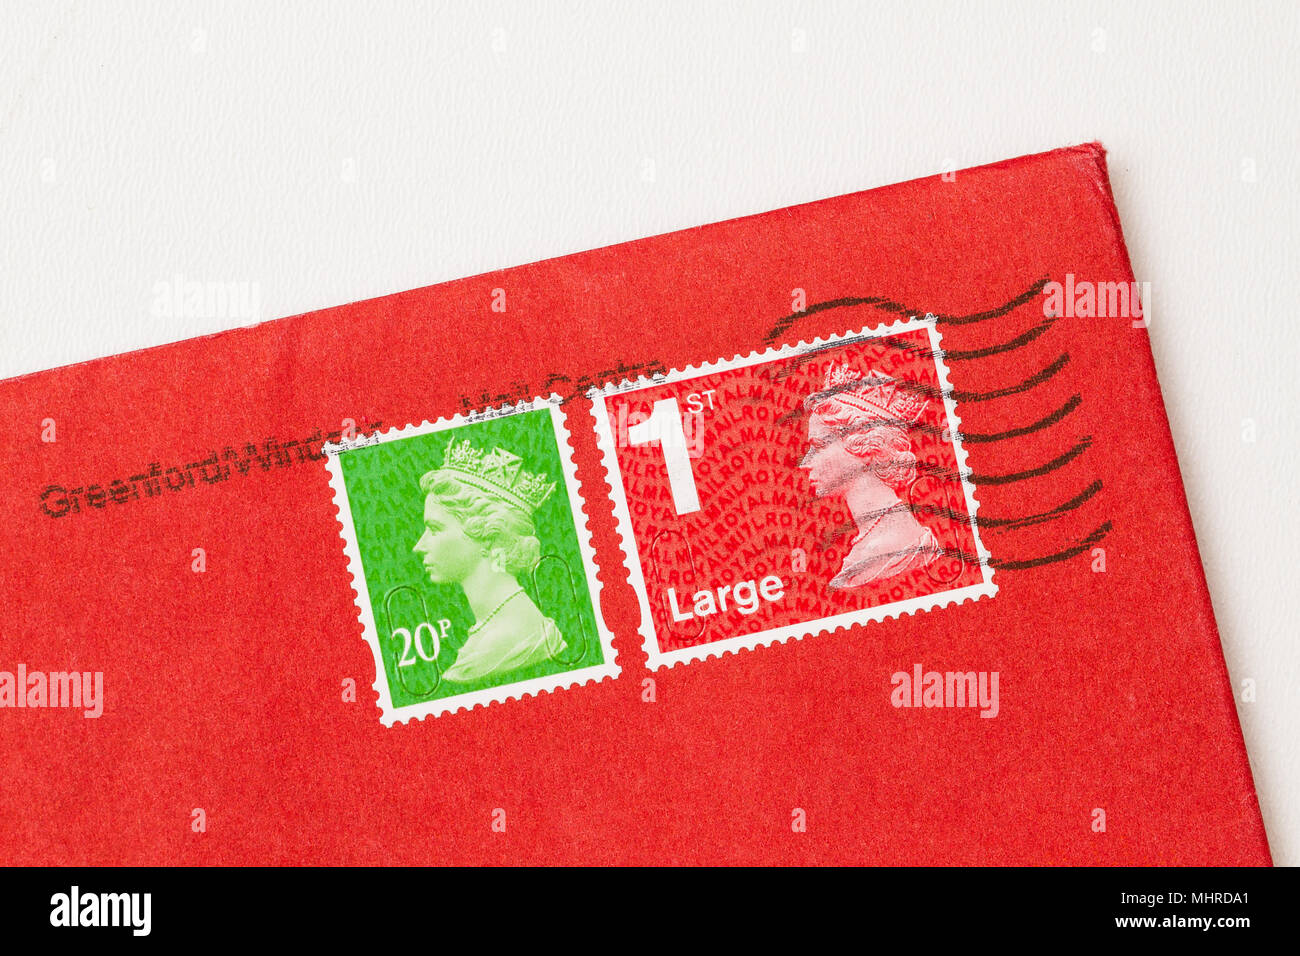 Coin de l'enveloppe avec 2 timbres, ceux rouge, verte, de la Reine Elisabeth II. Timbre-poste britannique sur papier rouge. Banque D'Images